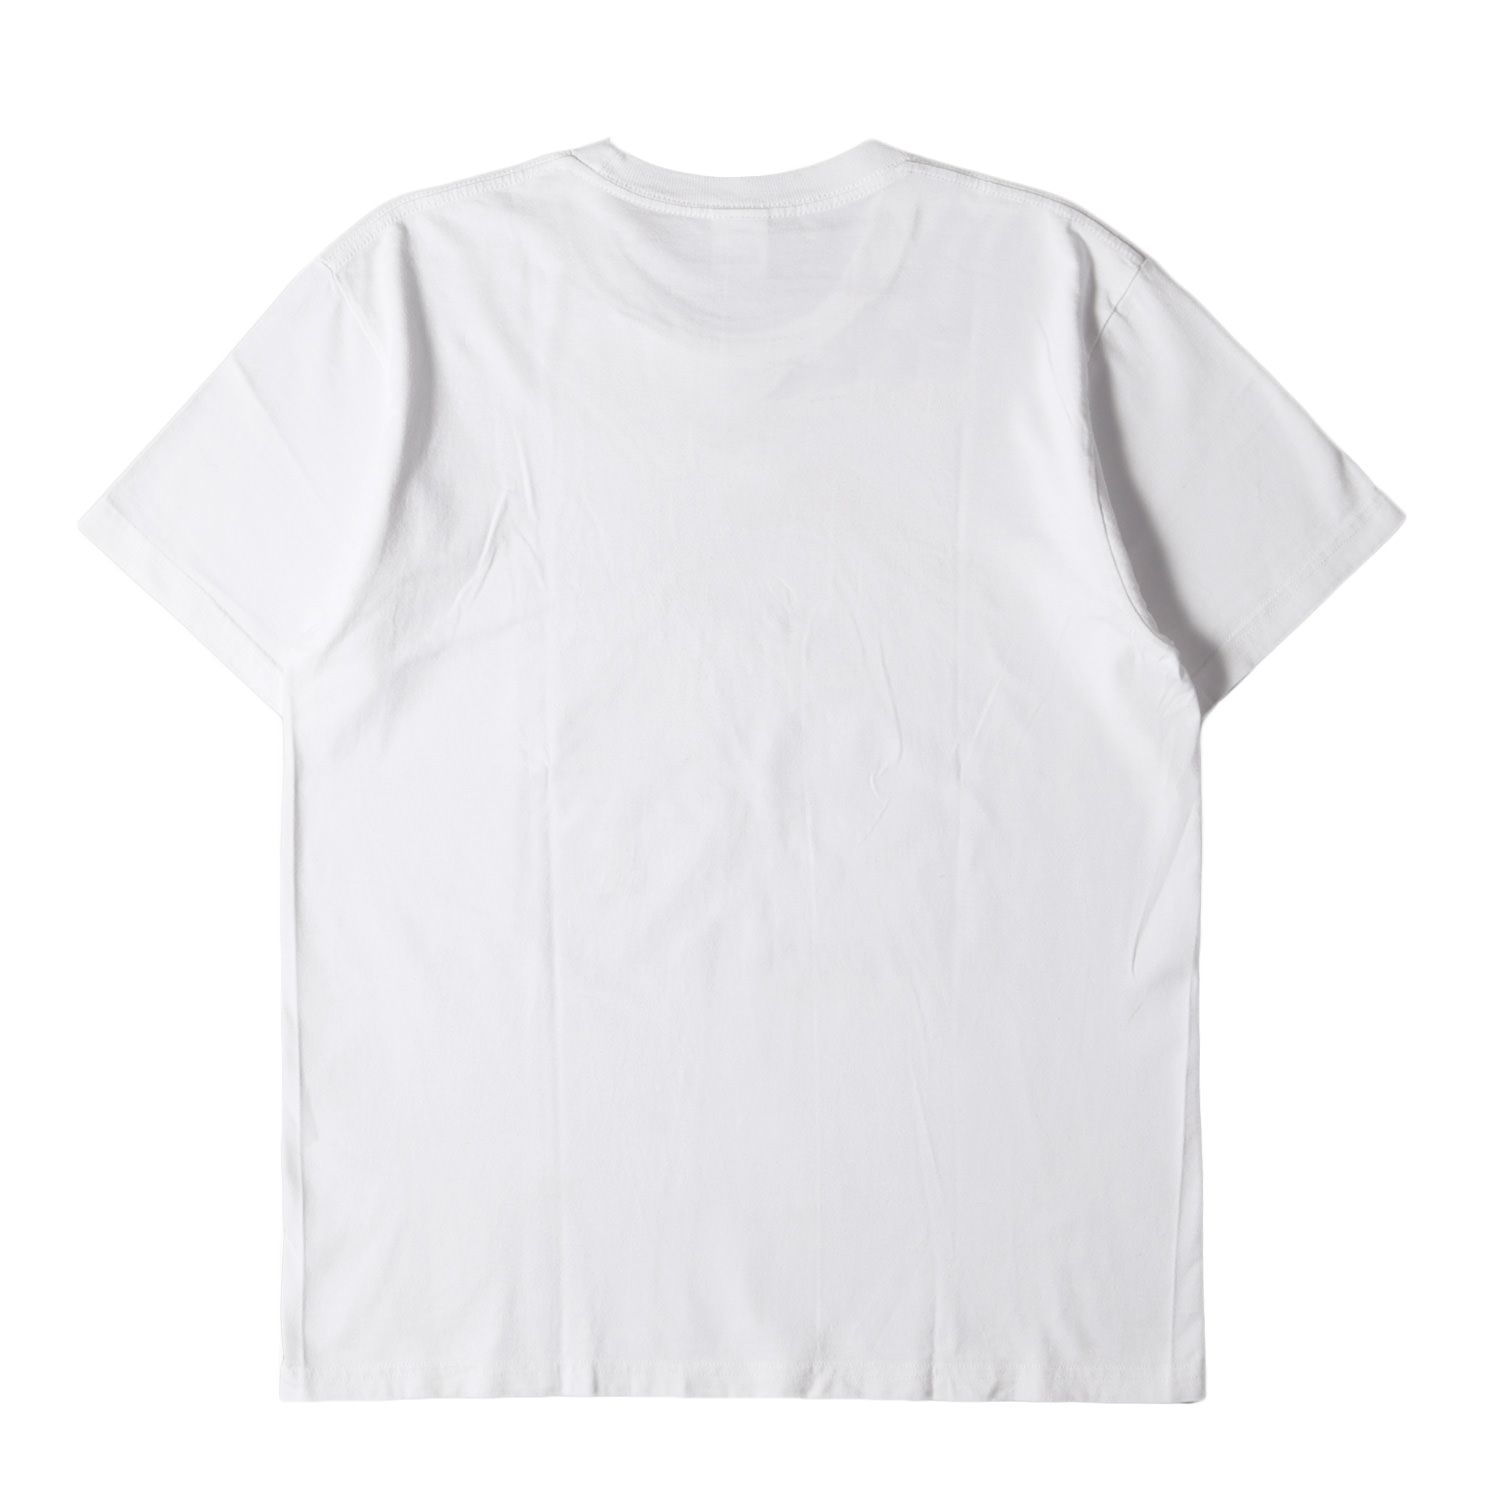 Supreme シュプリーム Tシャツ サイズ:M 18SS モナリザ グラフィック クルーネック 半袖Tシャツ Mona Lisa Tee ホワイト  白 トップス カットソー【メンズ】